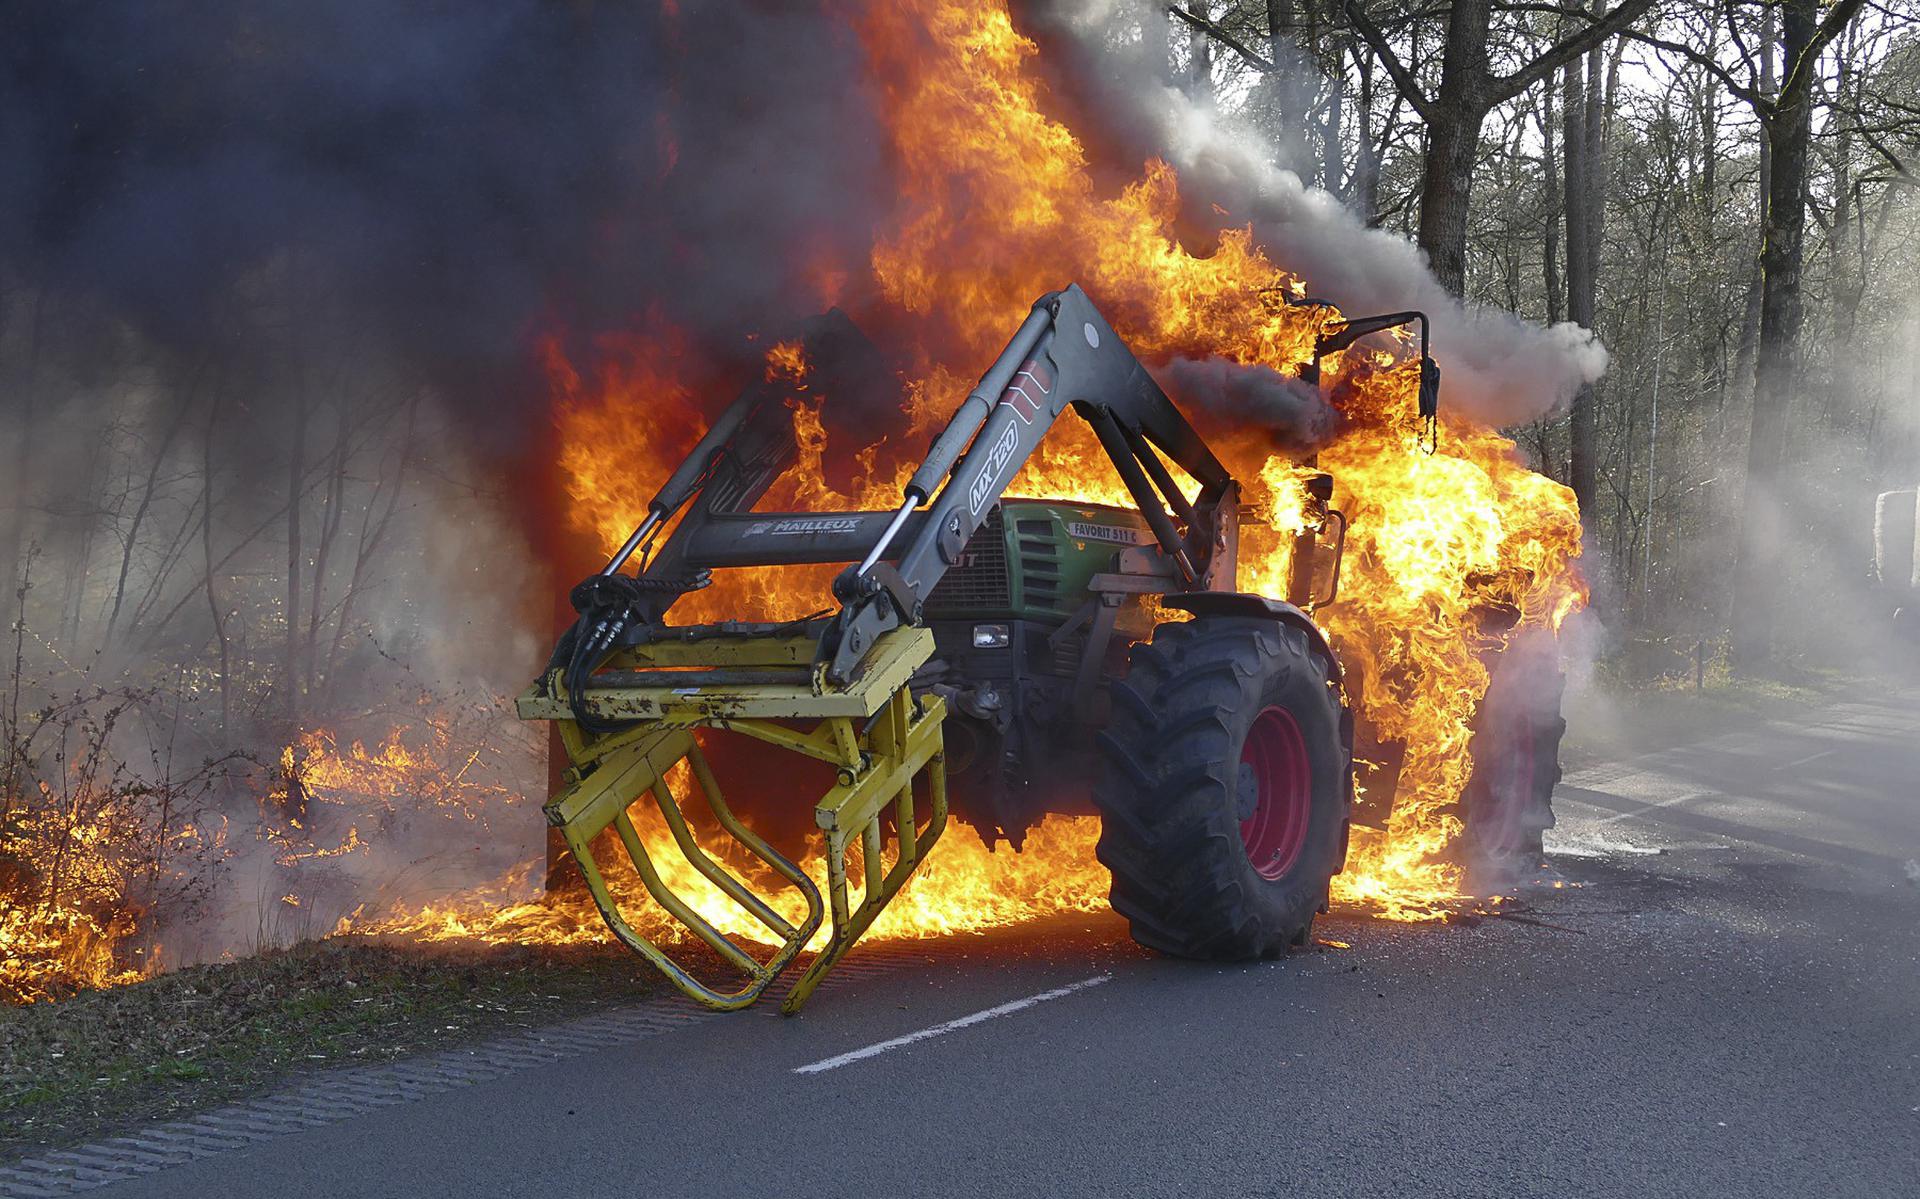 Mislukking navigatie zuurstof Tractor vliegt in de brand bij Hollandscheveld, kar met tien balen hooi net  op tijd weggereden van de vlammen - Dagblad van het Noorden